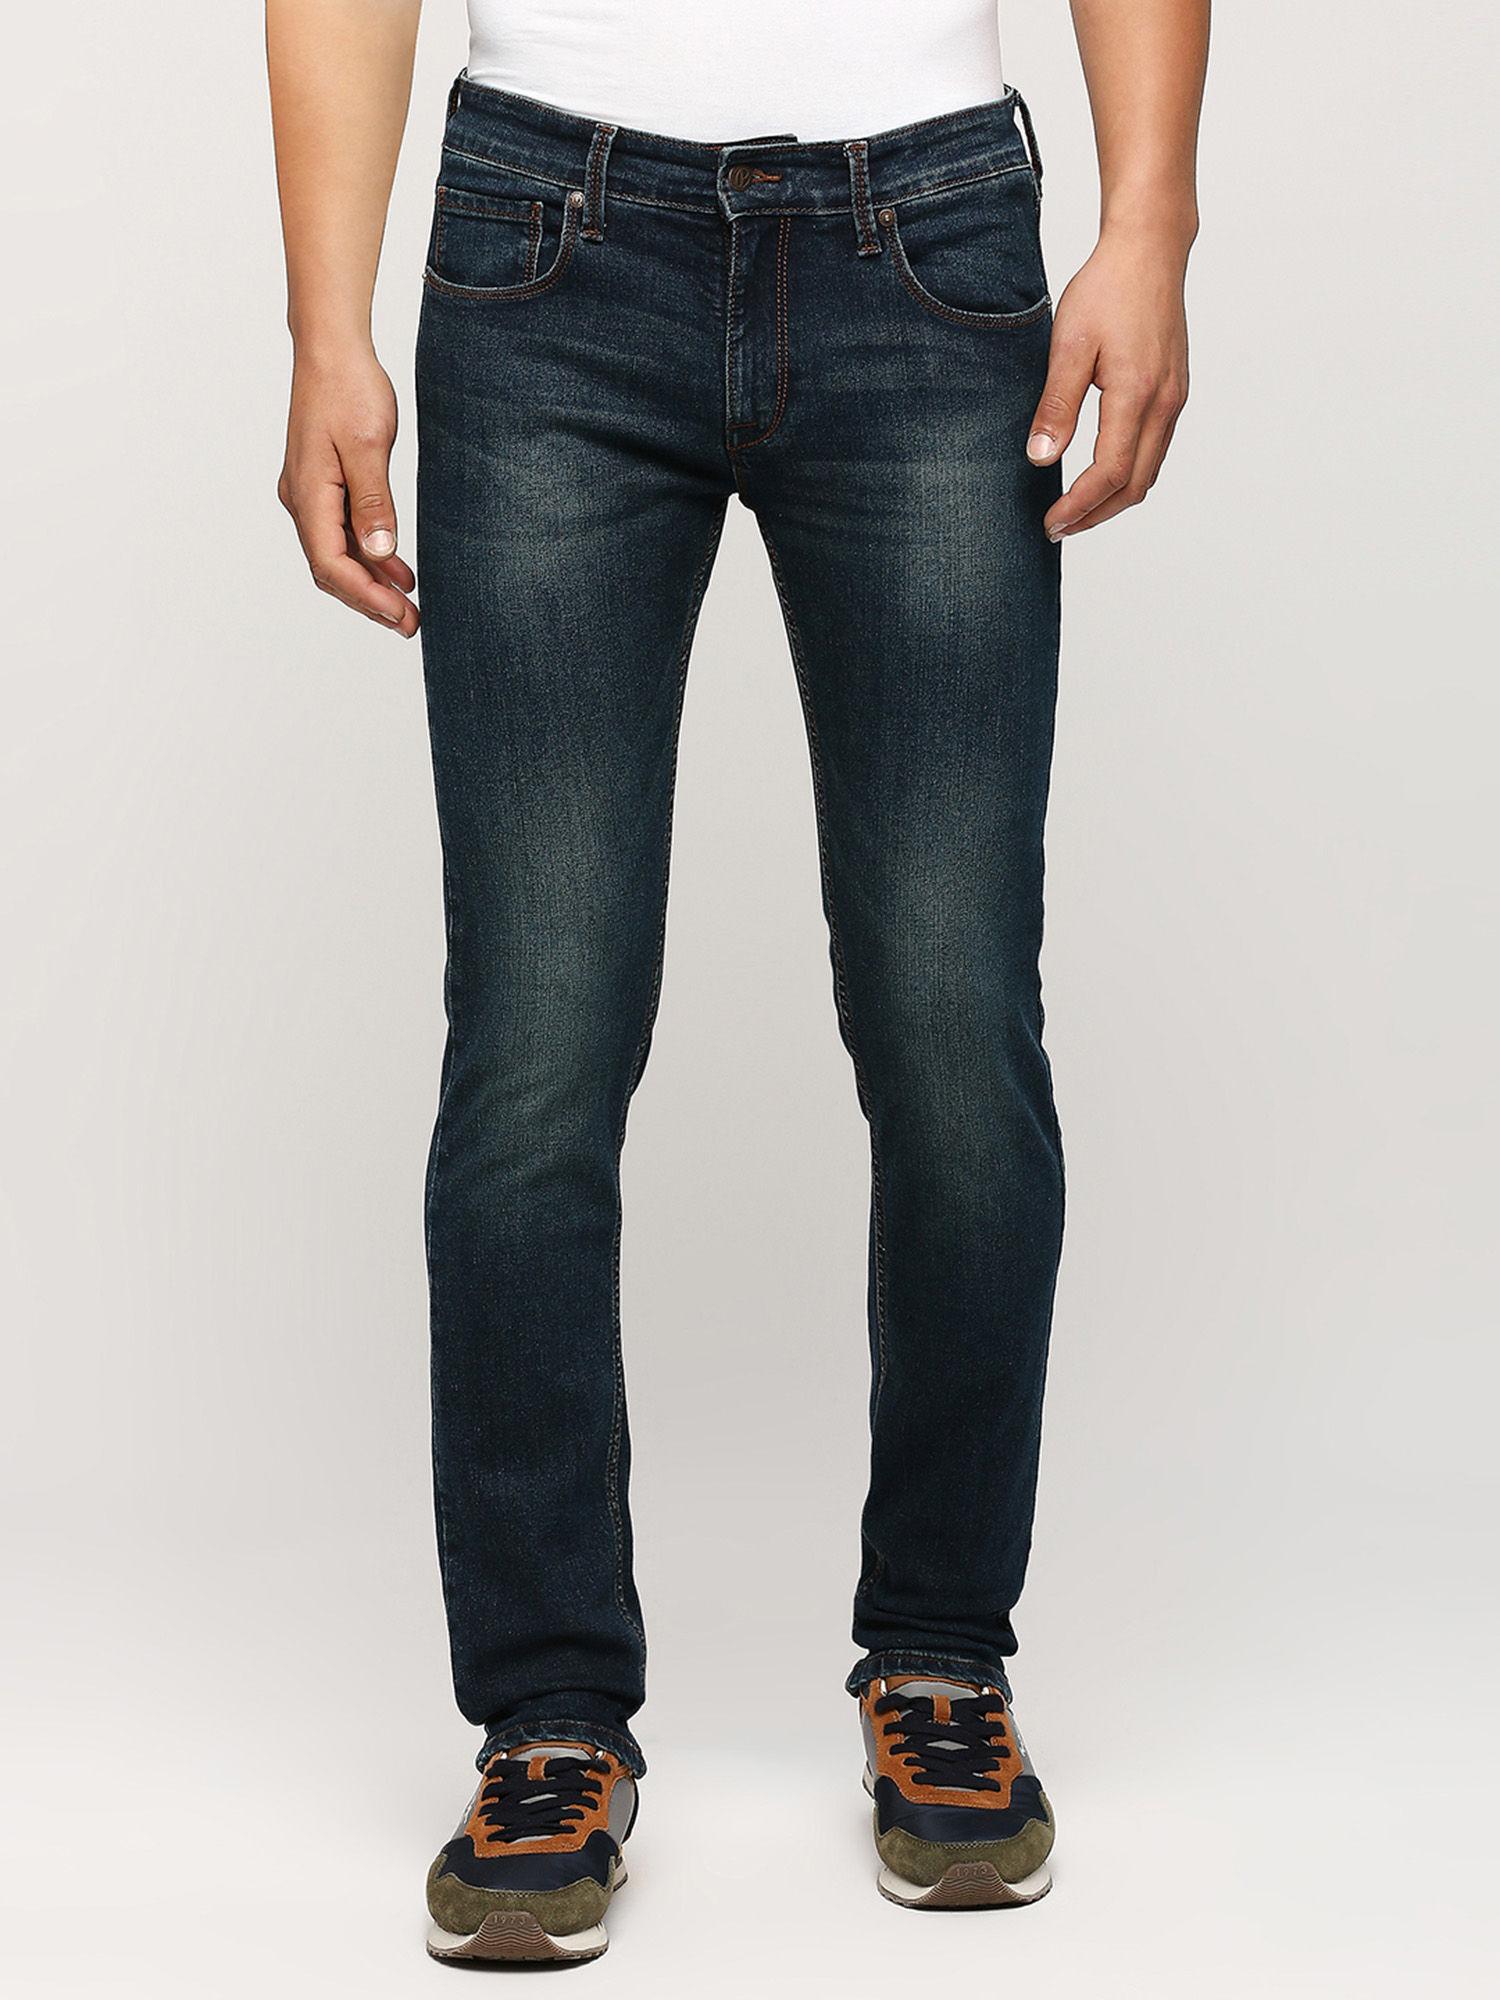 vapour slim fit mid waist jeans navy blue